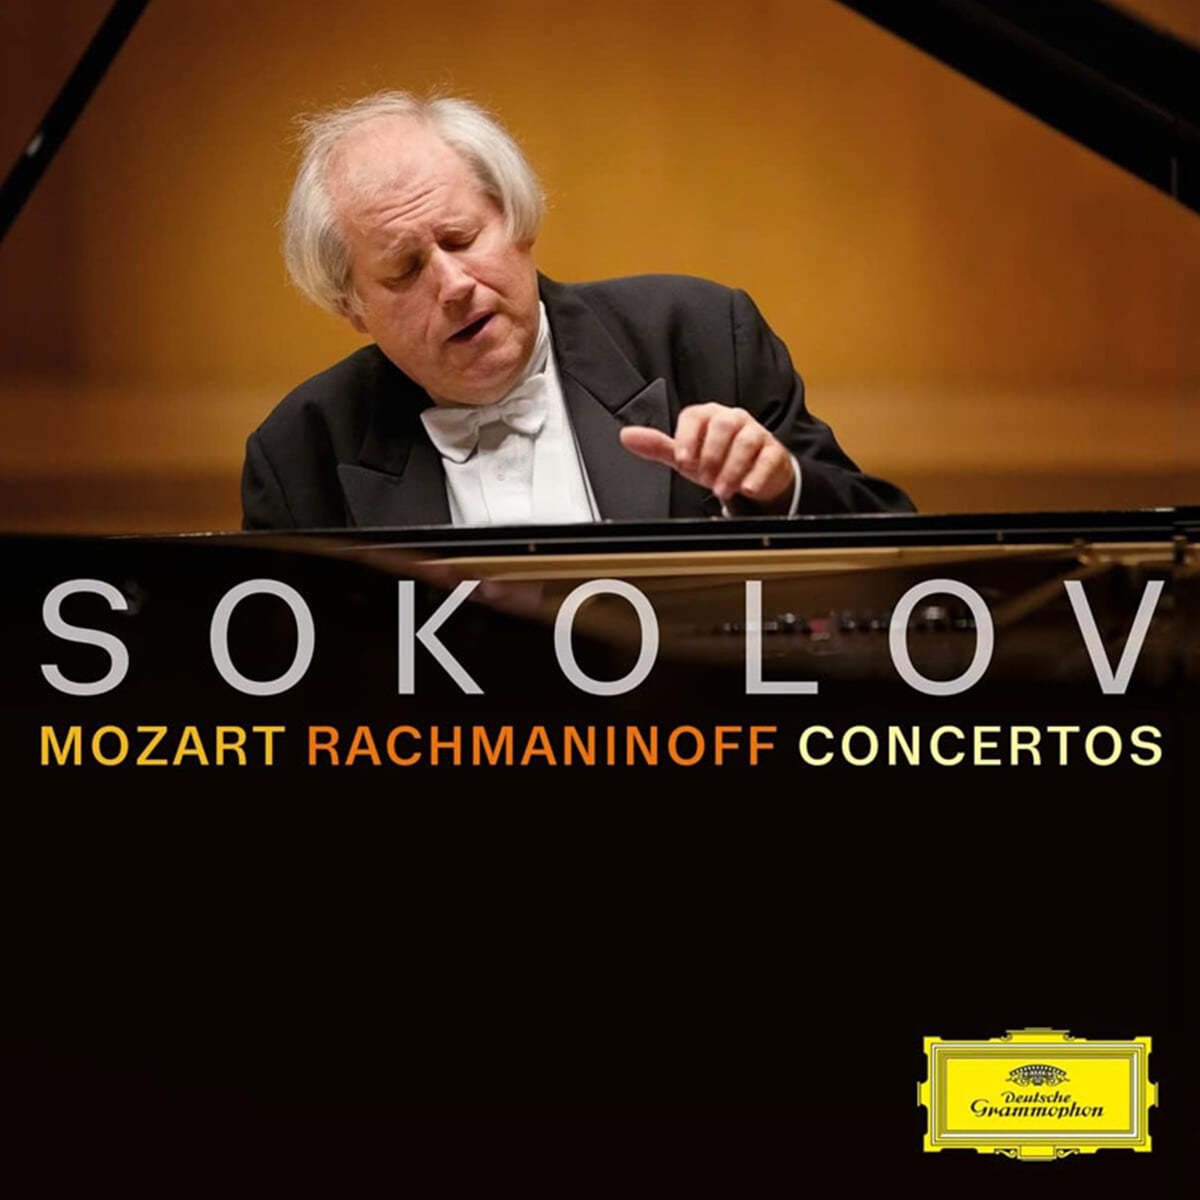 Grigory Sokolov 모차르트 / 라흐마니노프: 피아노 협주곡 (Mozart: Piano Concerto No. 23 / Rachmaninoff: Piano Concerto No. 3) [2LP]